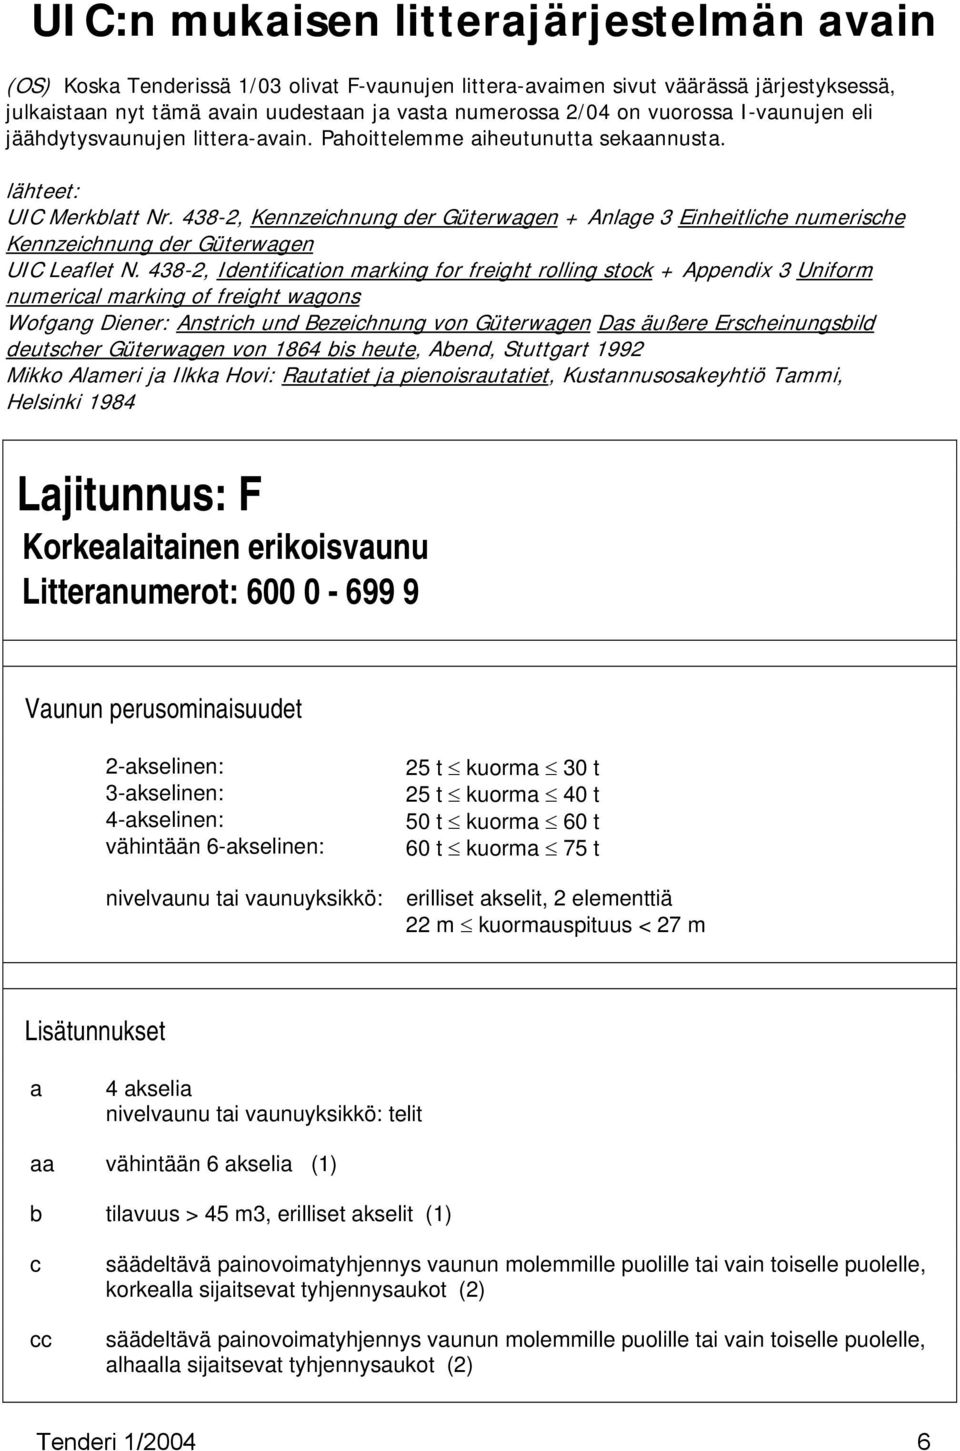 438-2, Kennzeichnung der Güterwagen + Anlage 3 Einheitliche numerische Kennzeichnung der Güterwagen UIC Leaflet N.